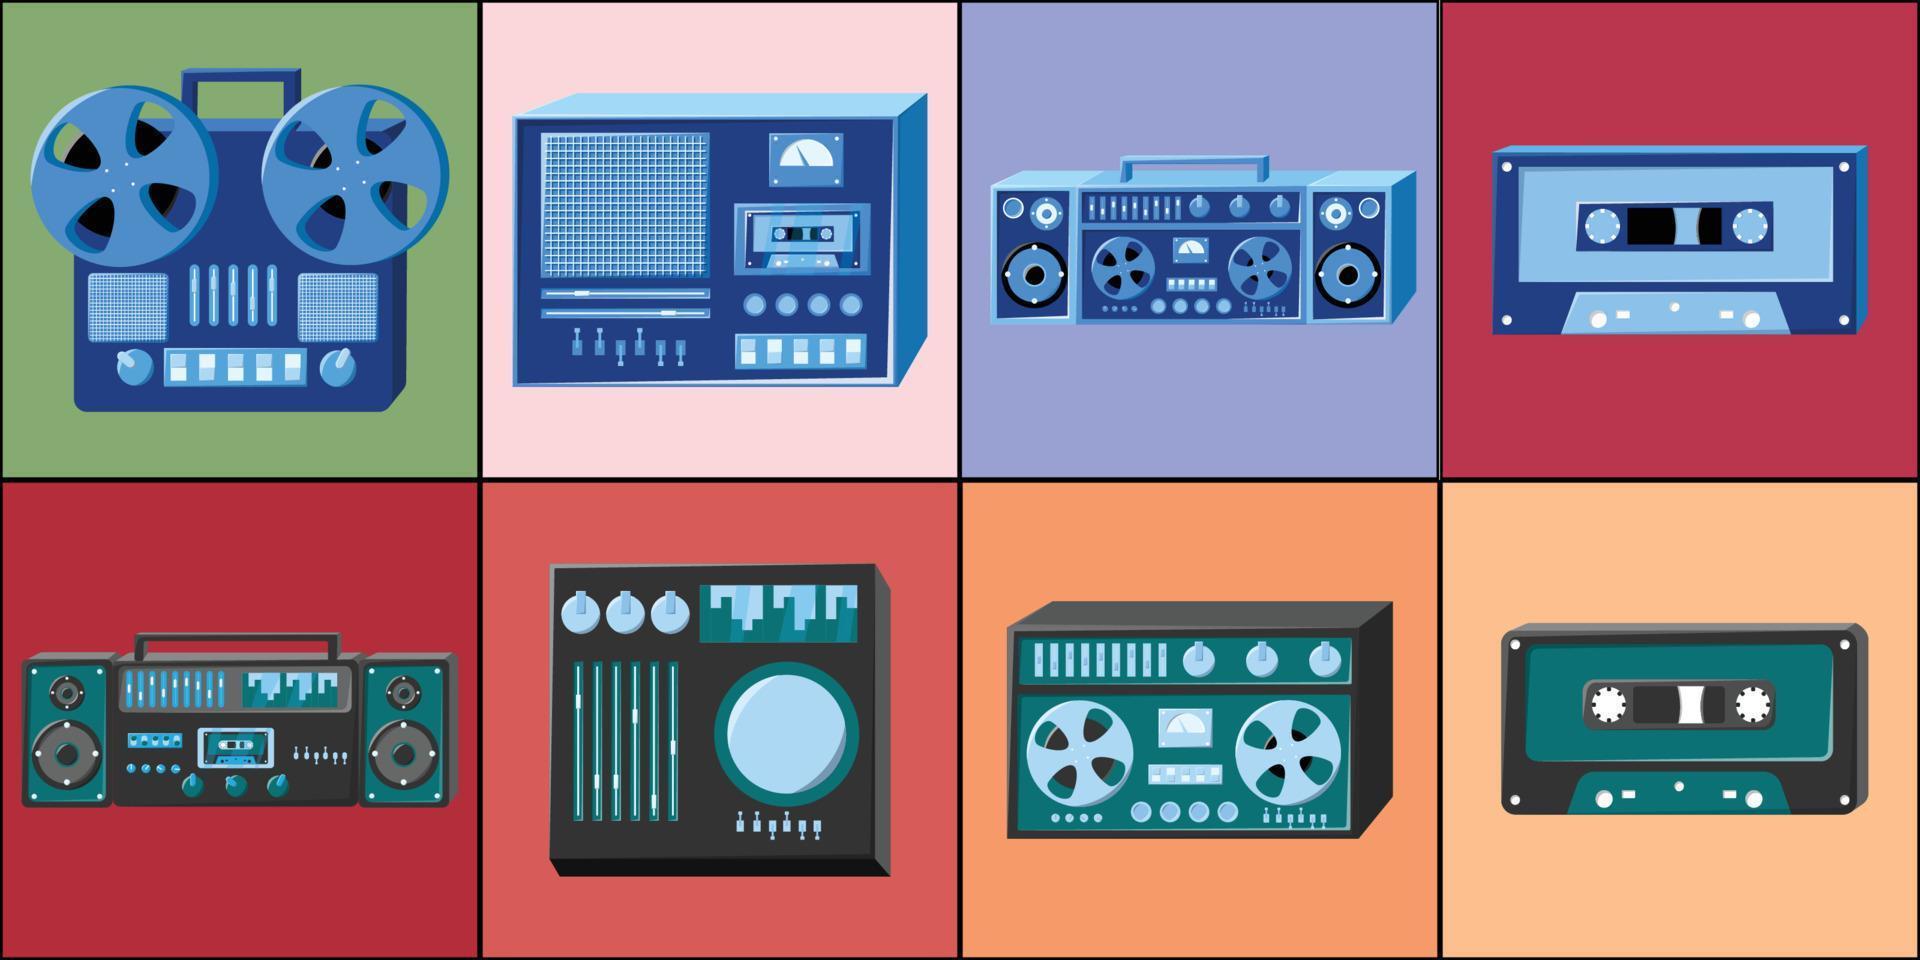 reeks van pictogrammen oud retro wijnoogst hipster tech elektronica cassette audio plakband recorder, computer, spel consoles voor video spellen van de jaren 70, jaren 80, jaren 90. vector illustratie